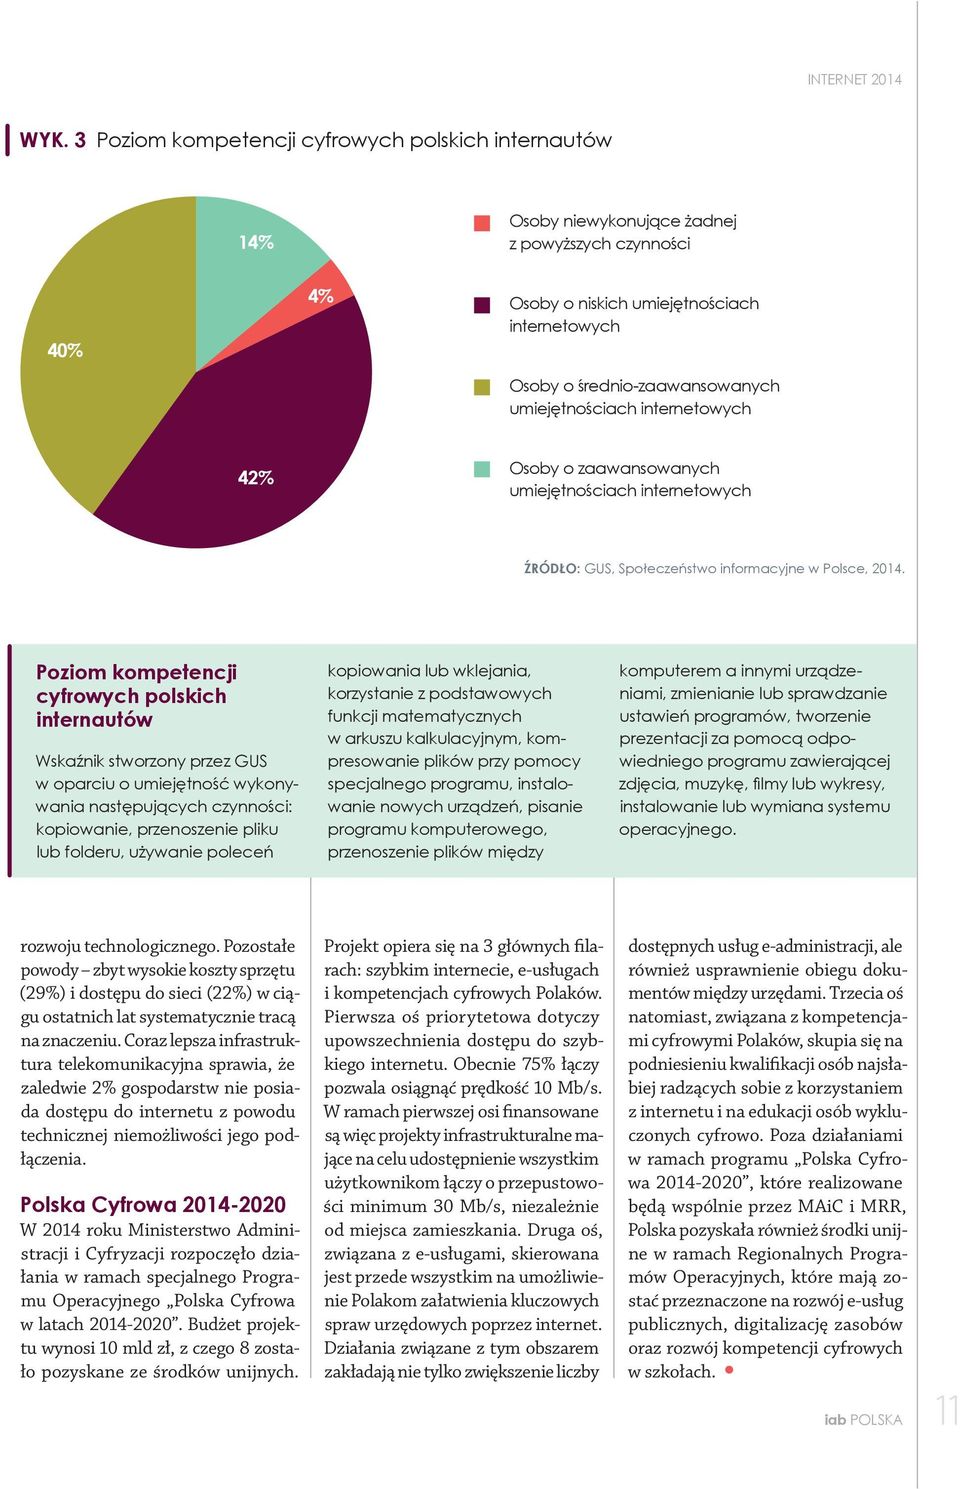 umiejętnościach internetowych 42% Osoby o zaawansowanych umiejętnościach internetowych ŹRÓDŁO: GUS, Społeczeństwo informacyjne w Polsce, 2014.